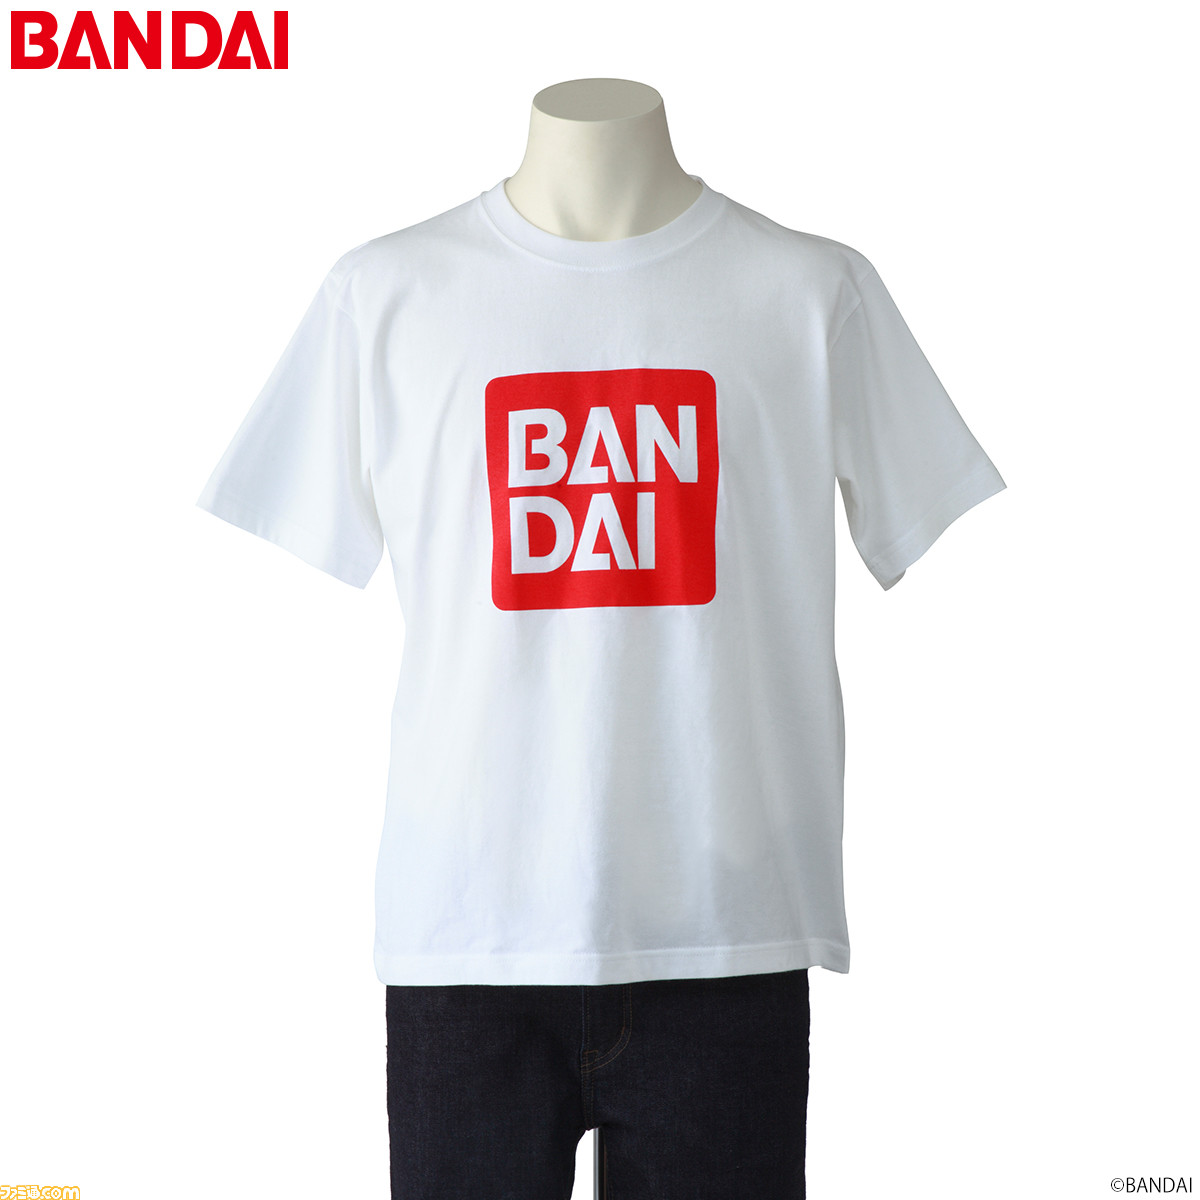 BANDAI（バンダイ）ロゴTシャツが発売！ カラーは白と黒の2種【ありそうでなかった】 | ゲーム・エンタメ最新情報のファミ通.com